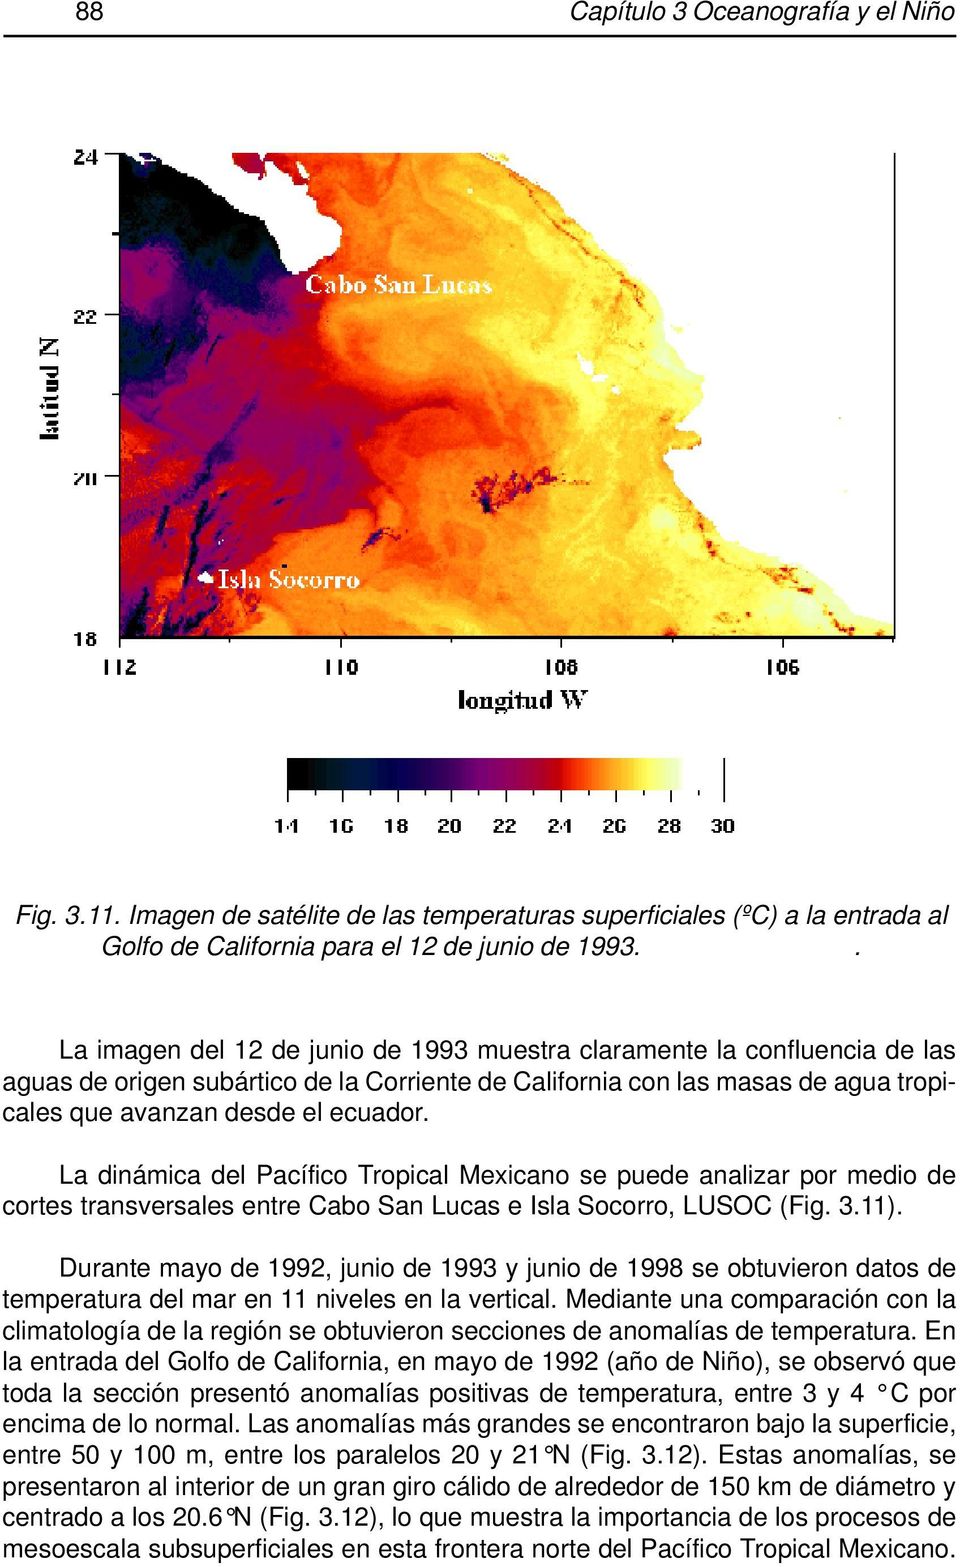 La dinámica del Pacífico Tropical Mexicano se puede analizar por medio de cortes transversales entre Cabo San Lucas e Isla Socorro, LUSOC (Fig. 3.11).